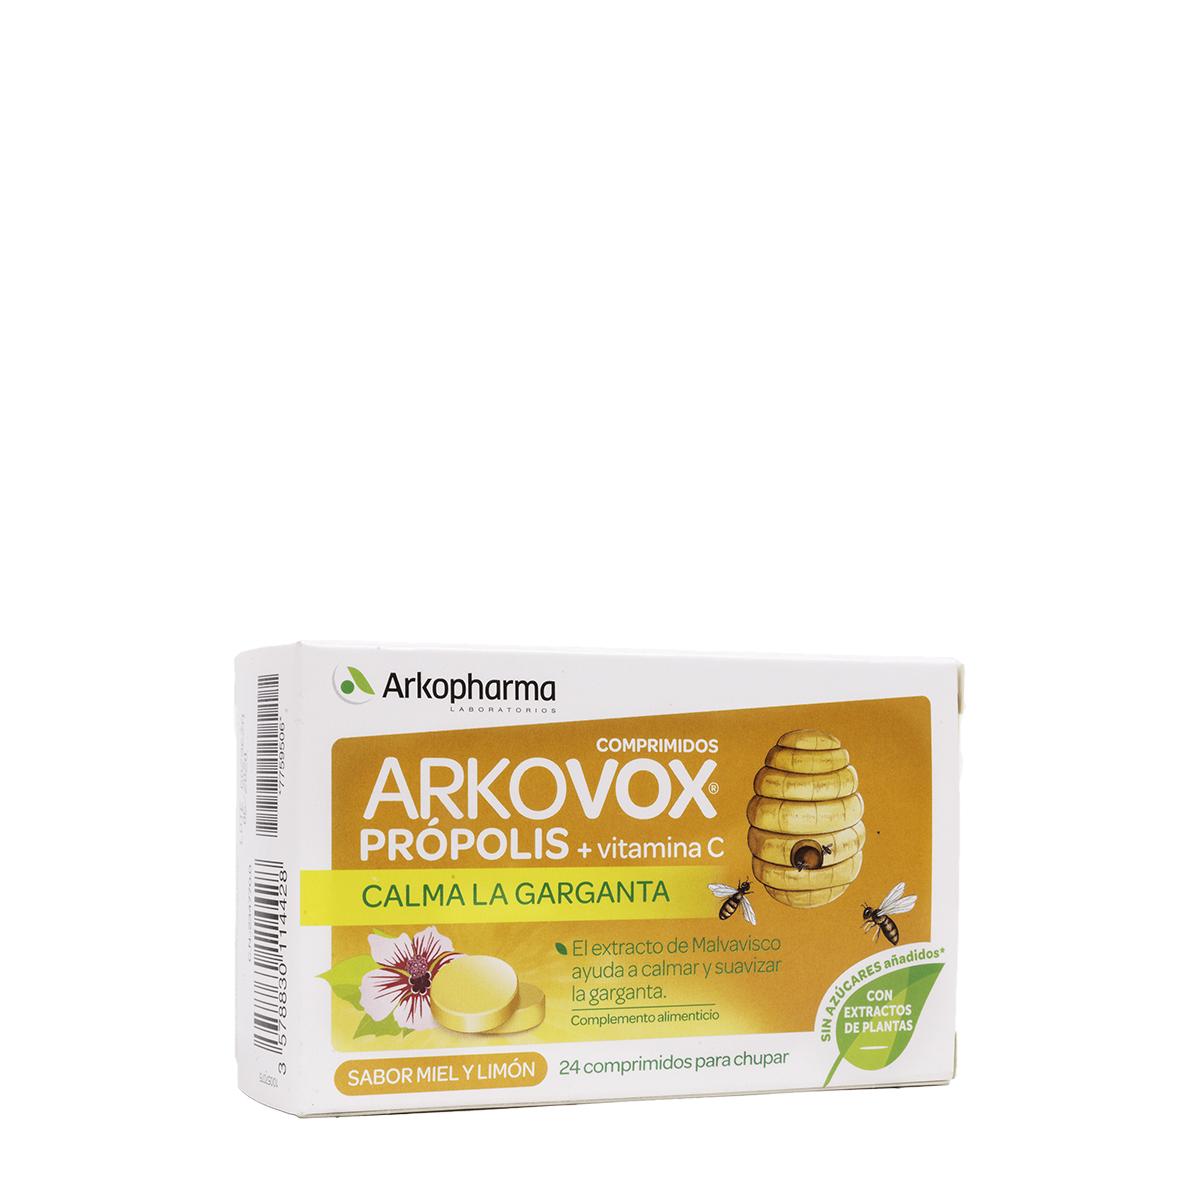 Arkopharma - Propólis + vitamina c con miel y limón de arkovox, 20 comprimidos